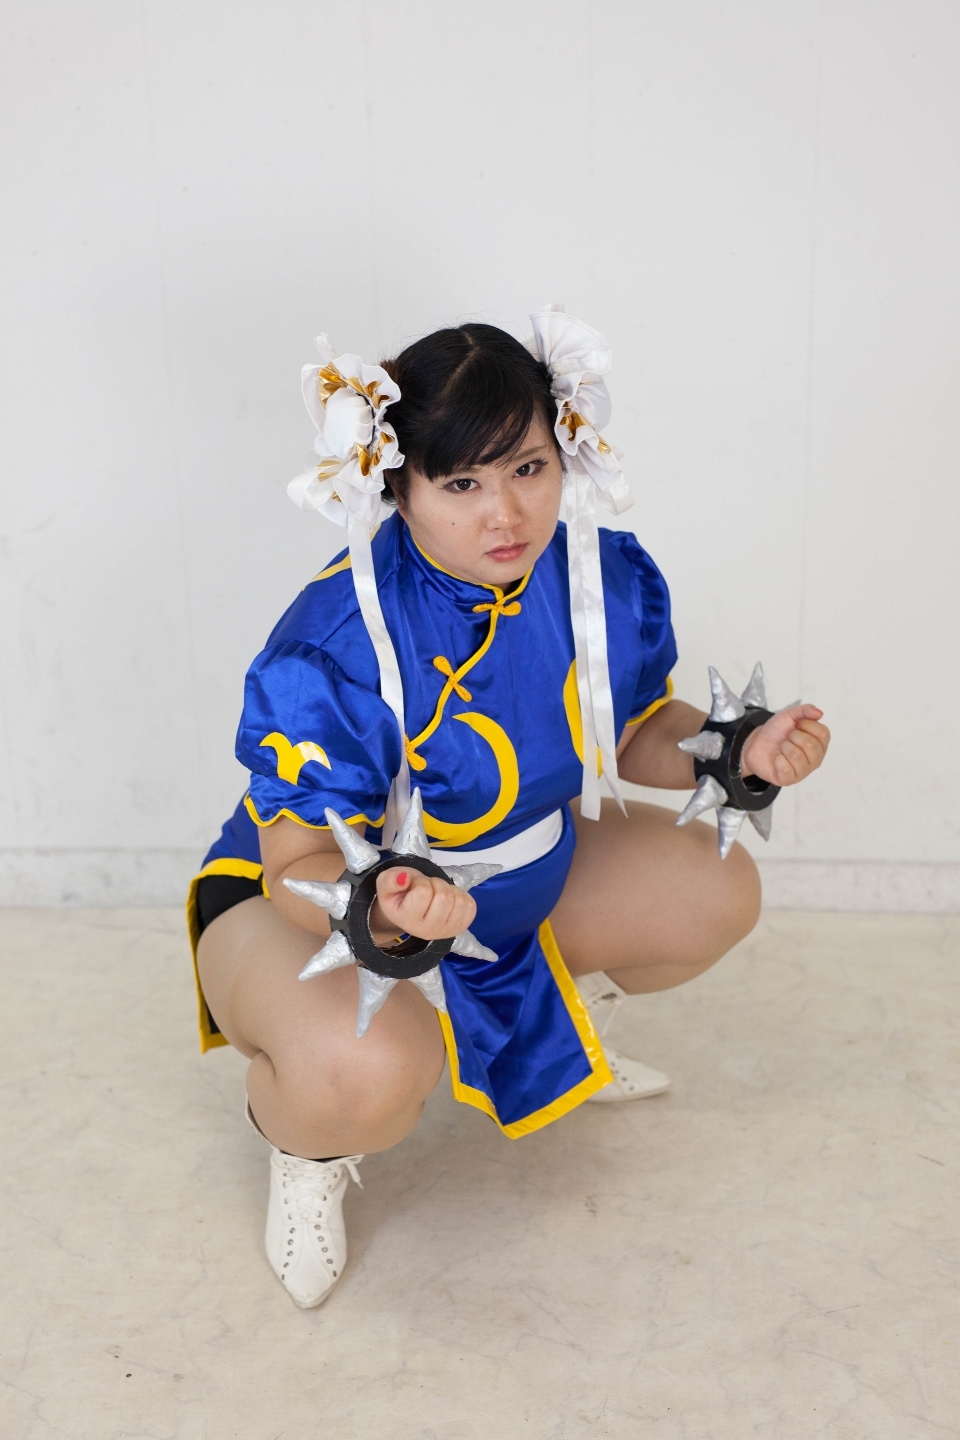 (渡辺さくらん) FIGHT FAT LADY (Sakuran Watanabe) (Mai Shiranui - Fatal Fury) (Chun-Li - Street Fighter) 100